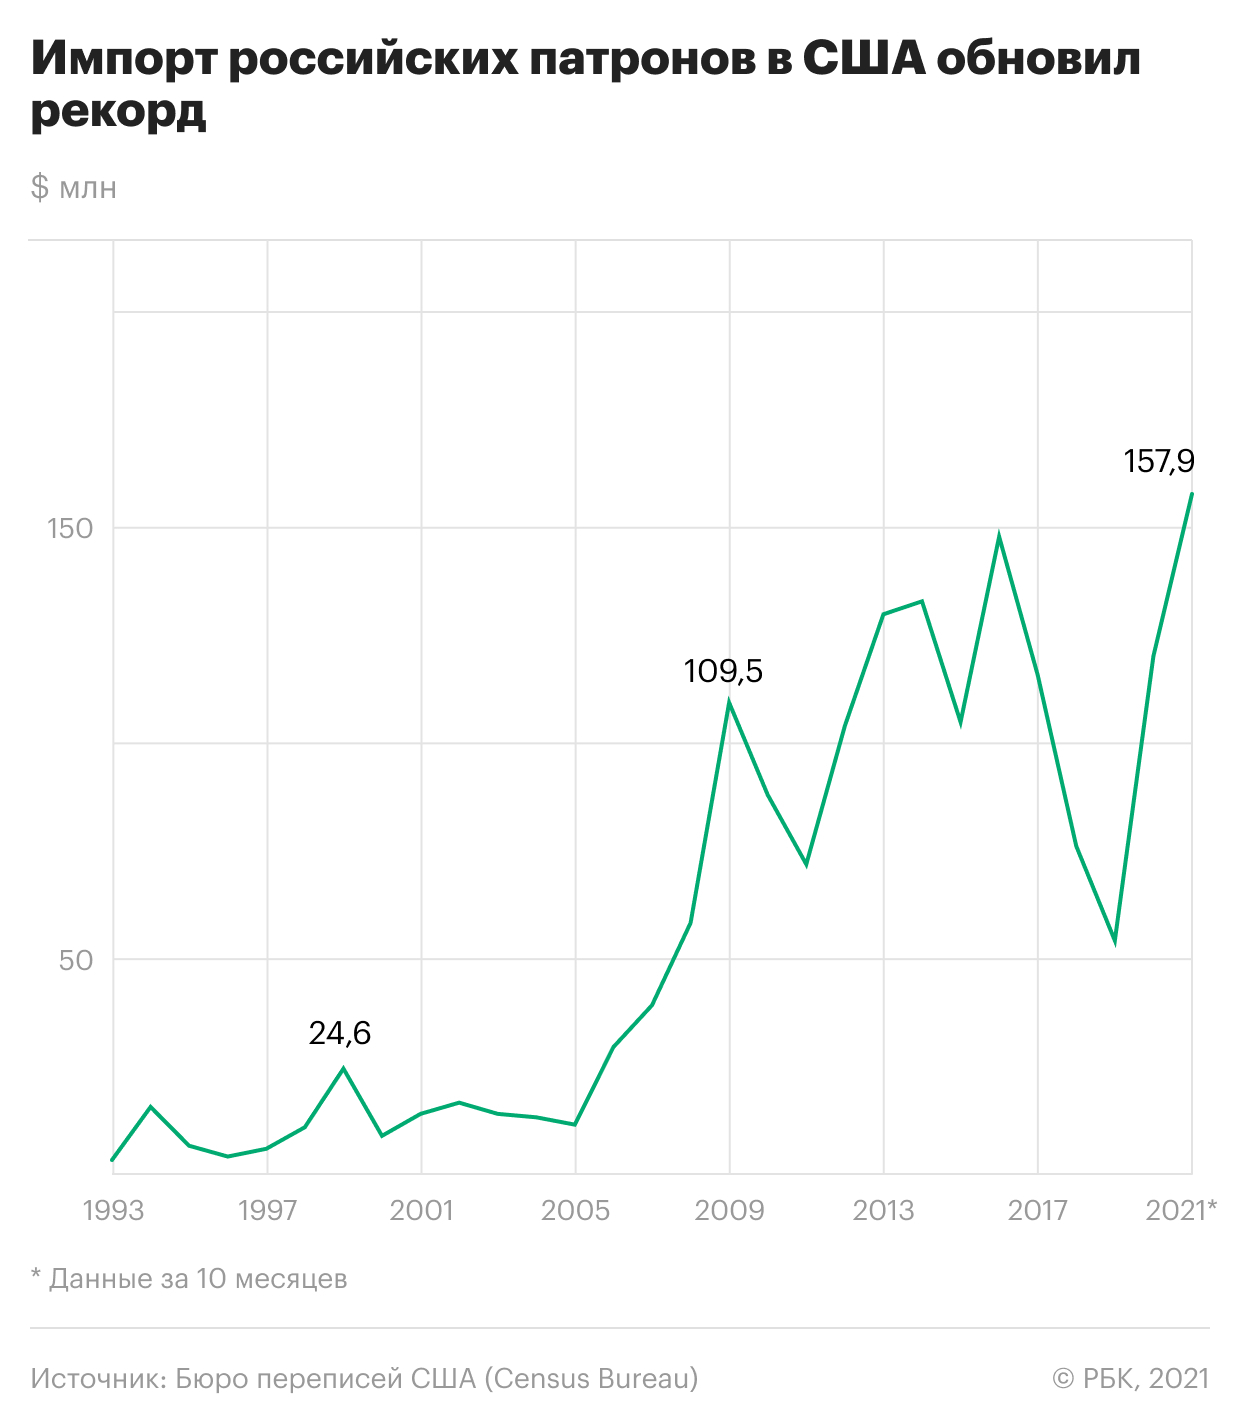 Как продажи патронов из России в США побили рекорд. Инфографика"/>













